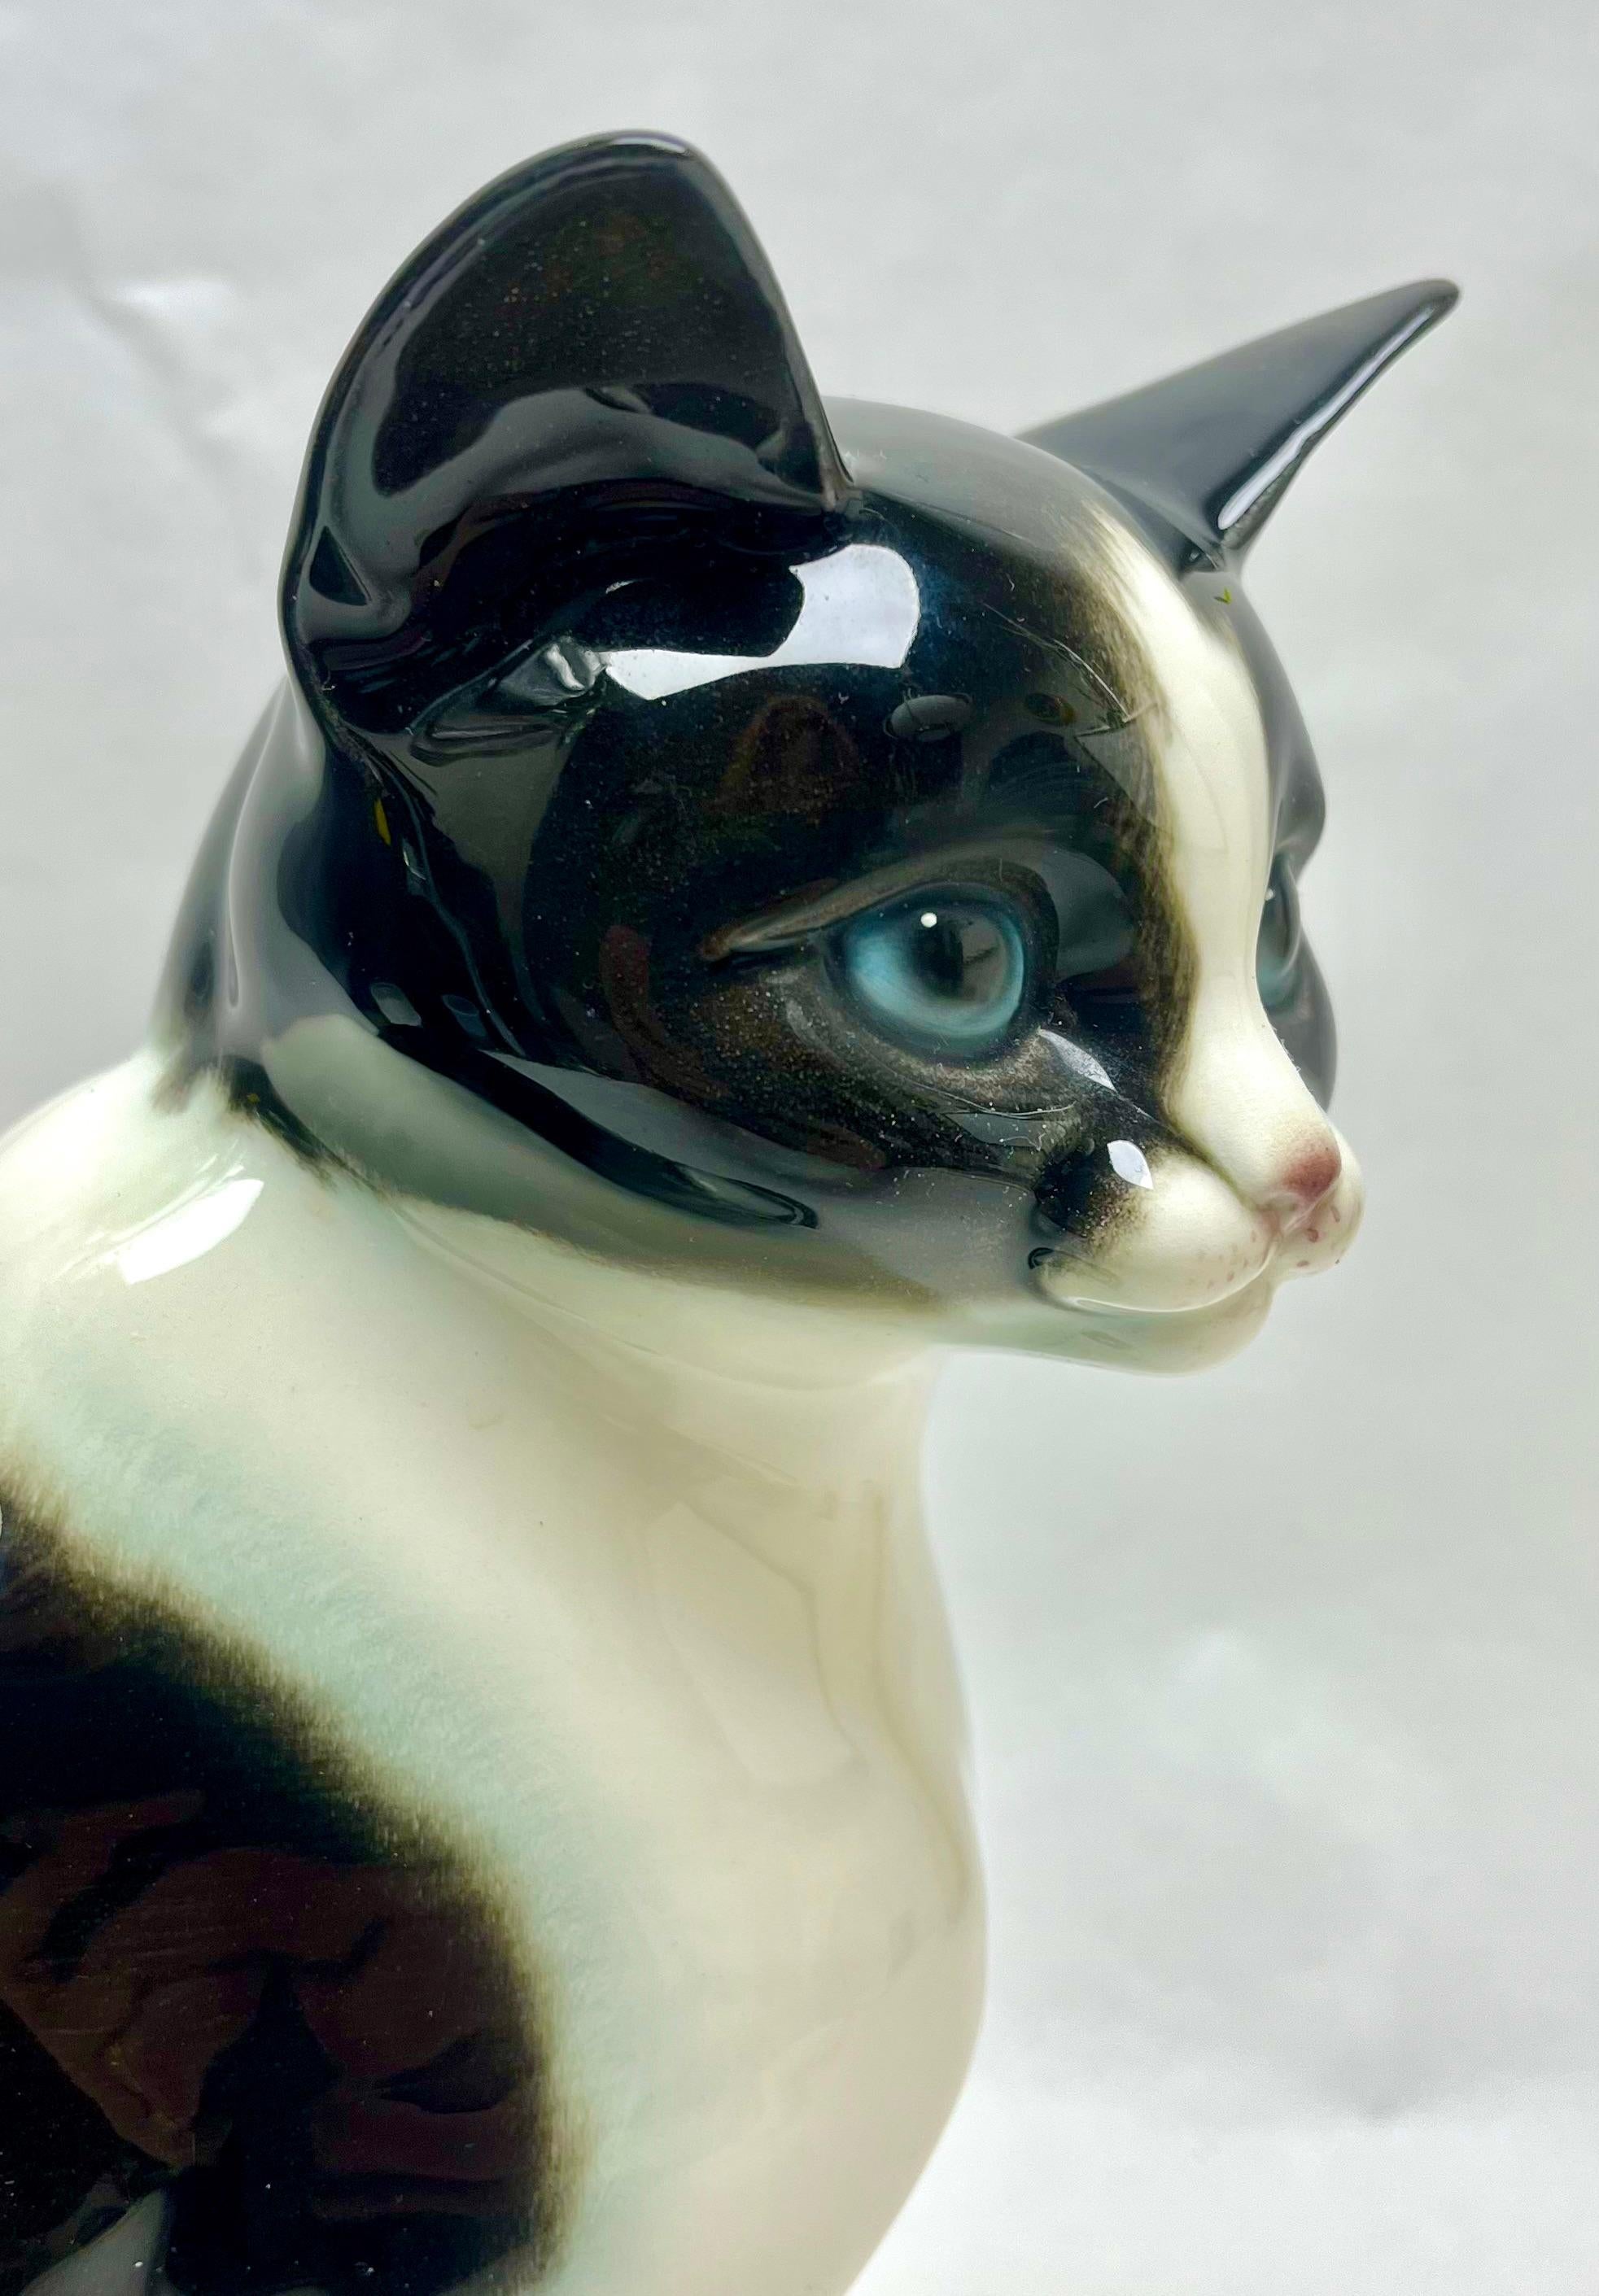 Goebel a produit cette spectaculaire figurine en porcelaine représentant un chat, vers 1960.
La pièce est en excellent état et d'une grande beauté.

Dimensions : hauteur : 10.63 in (27 cm) ?
diamètre : 6,3 in (16 cm)










 